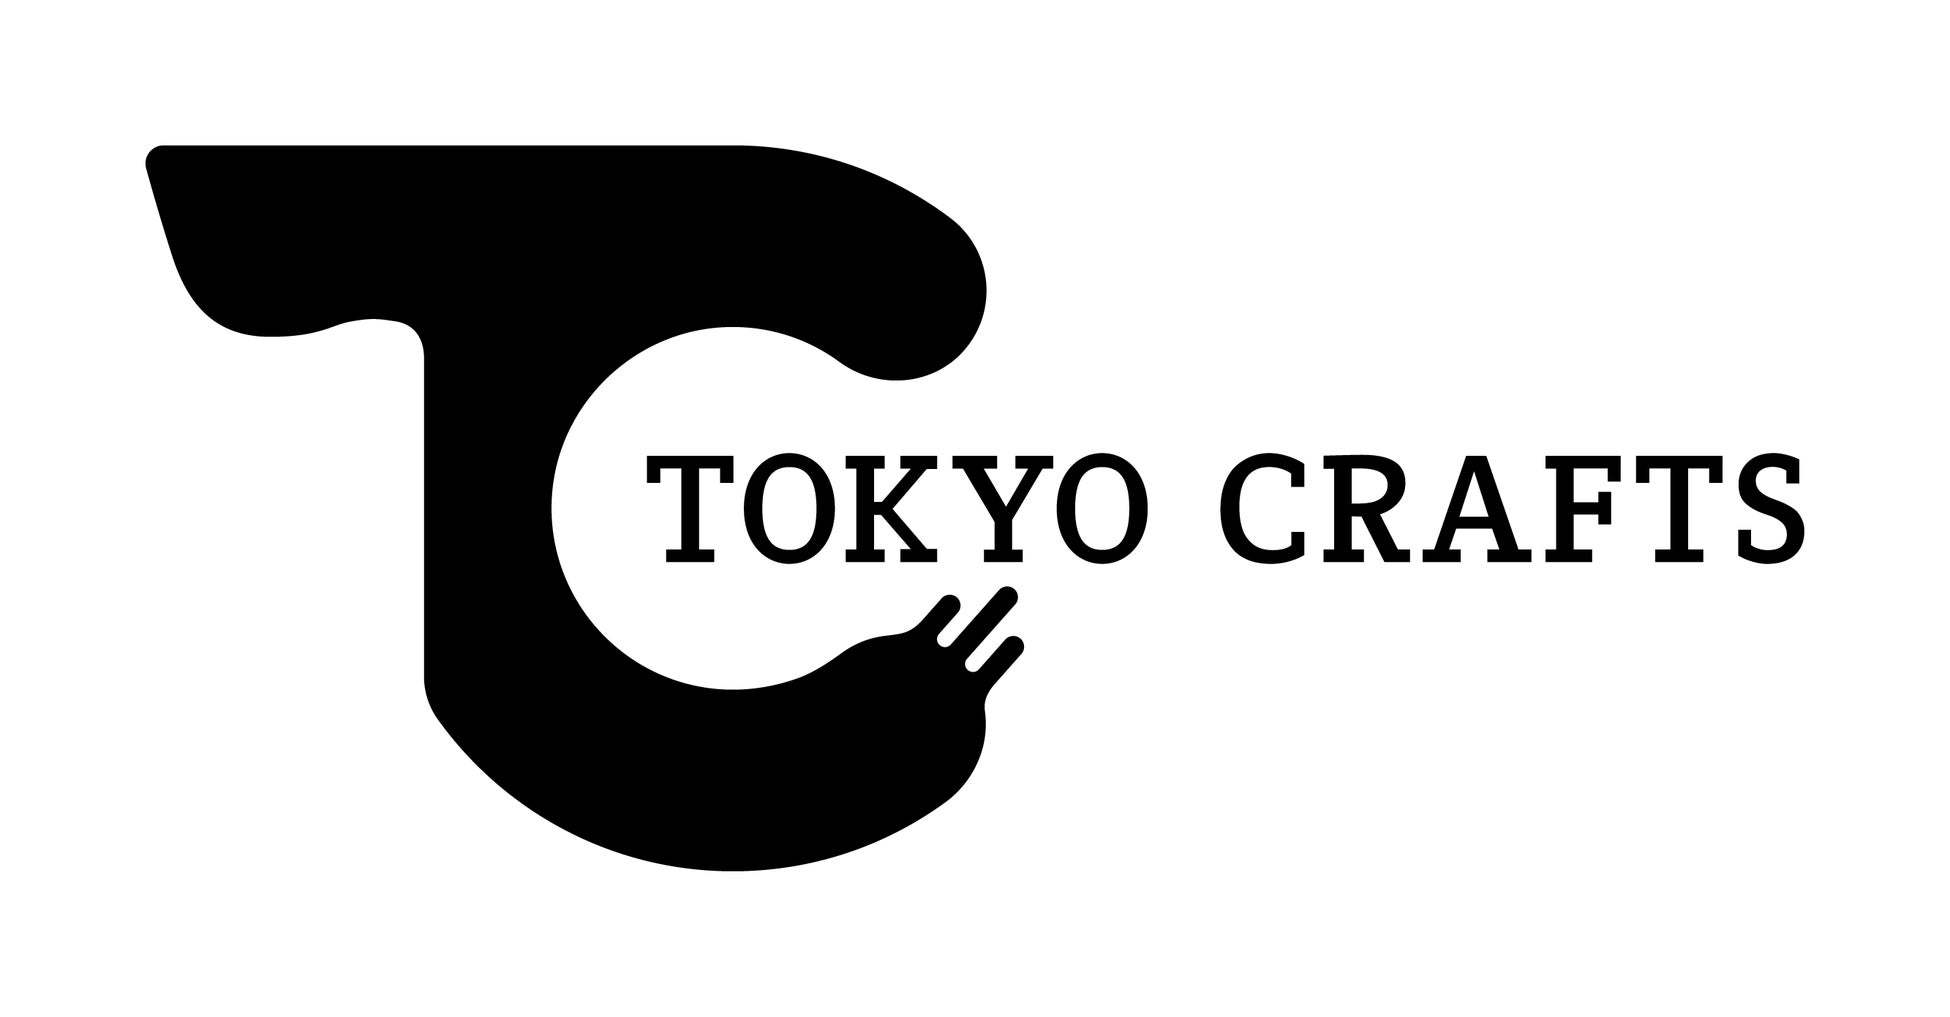  キャンプブランド『TOKYOCRAFTS（トウキョウクラフト）』が新潟県燕市のふるさと納税返礼品として提供開始のサブ画像1